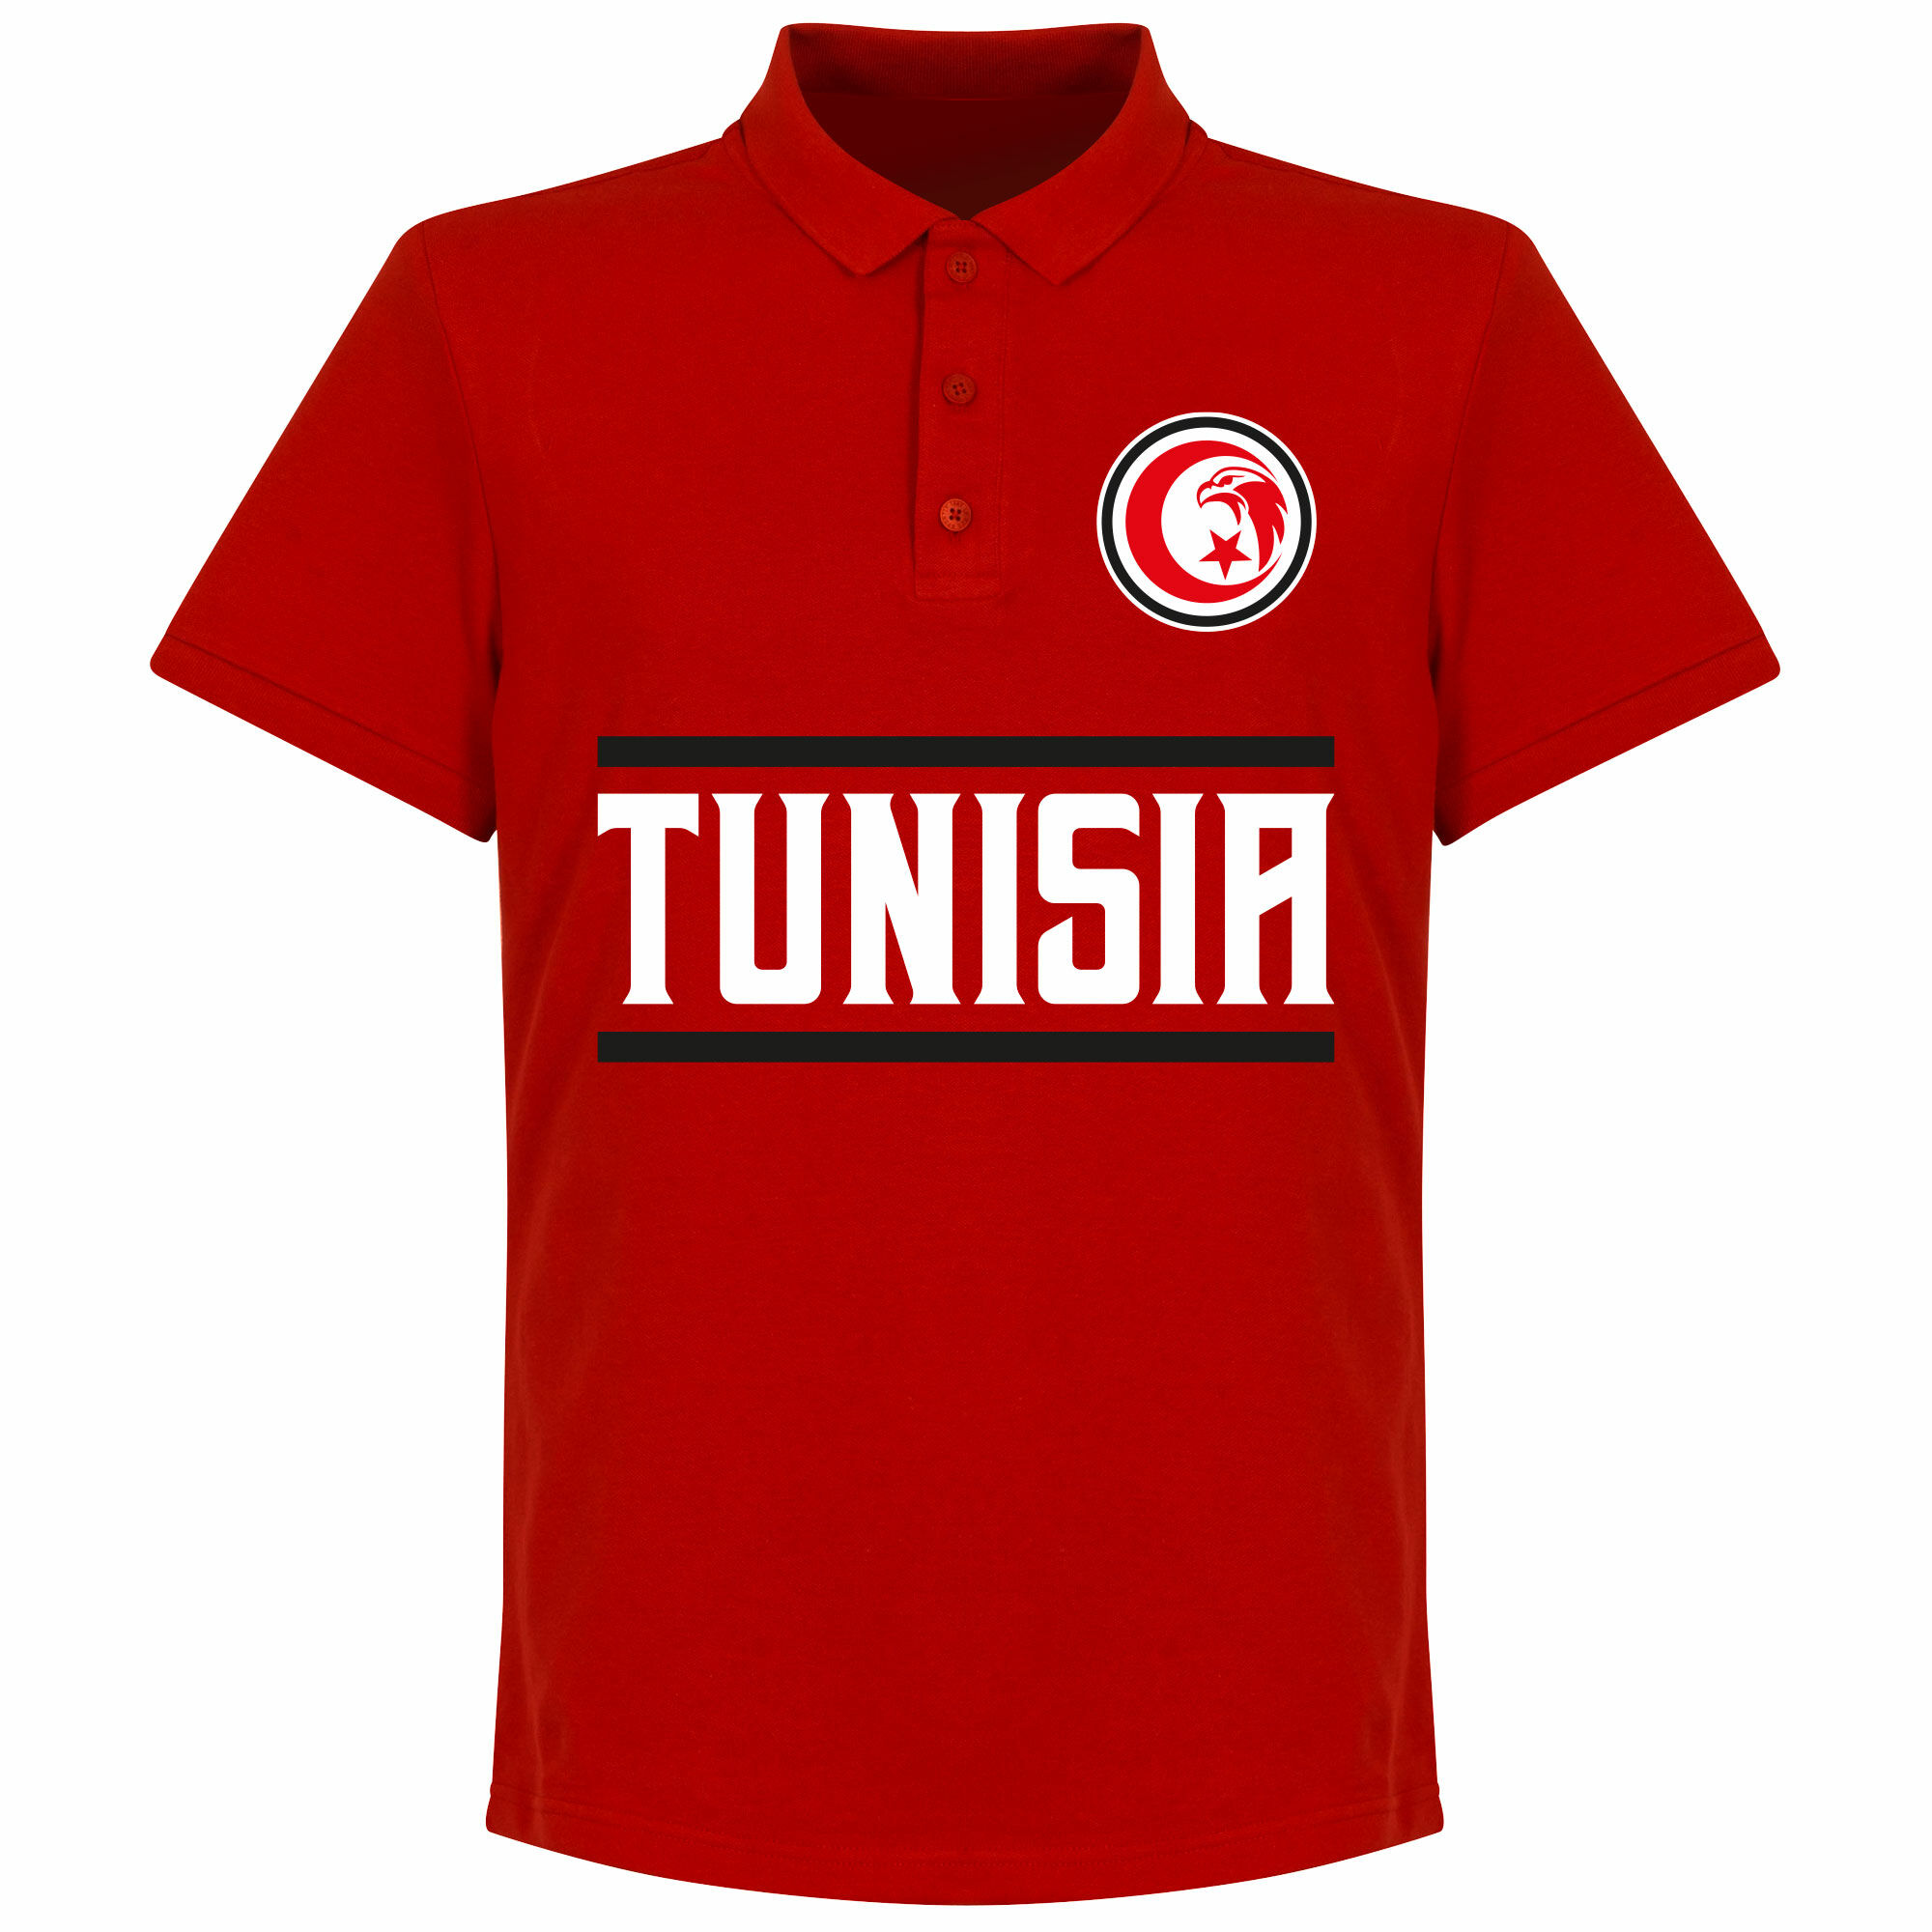 Tunisko - Tričko s límečkem - červené